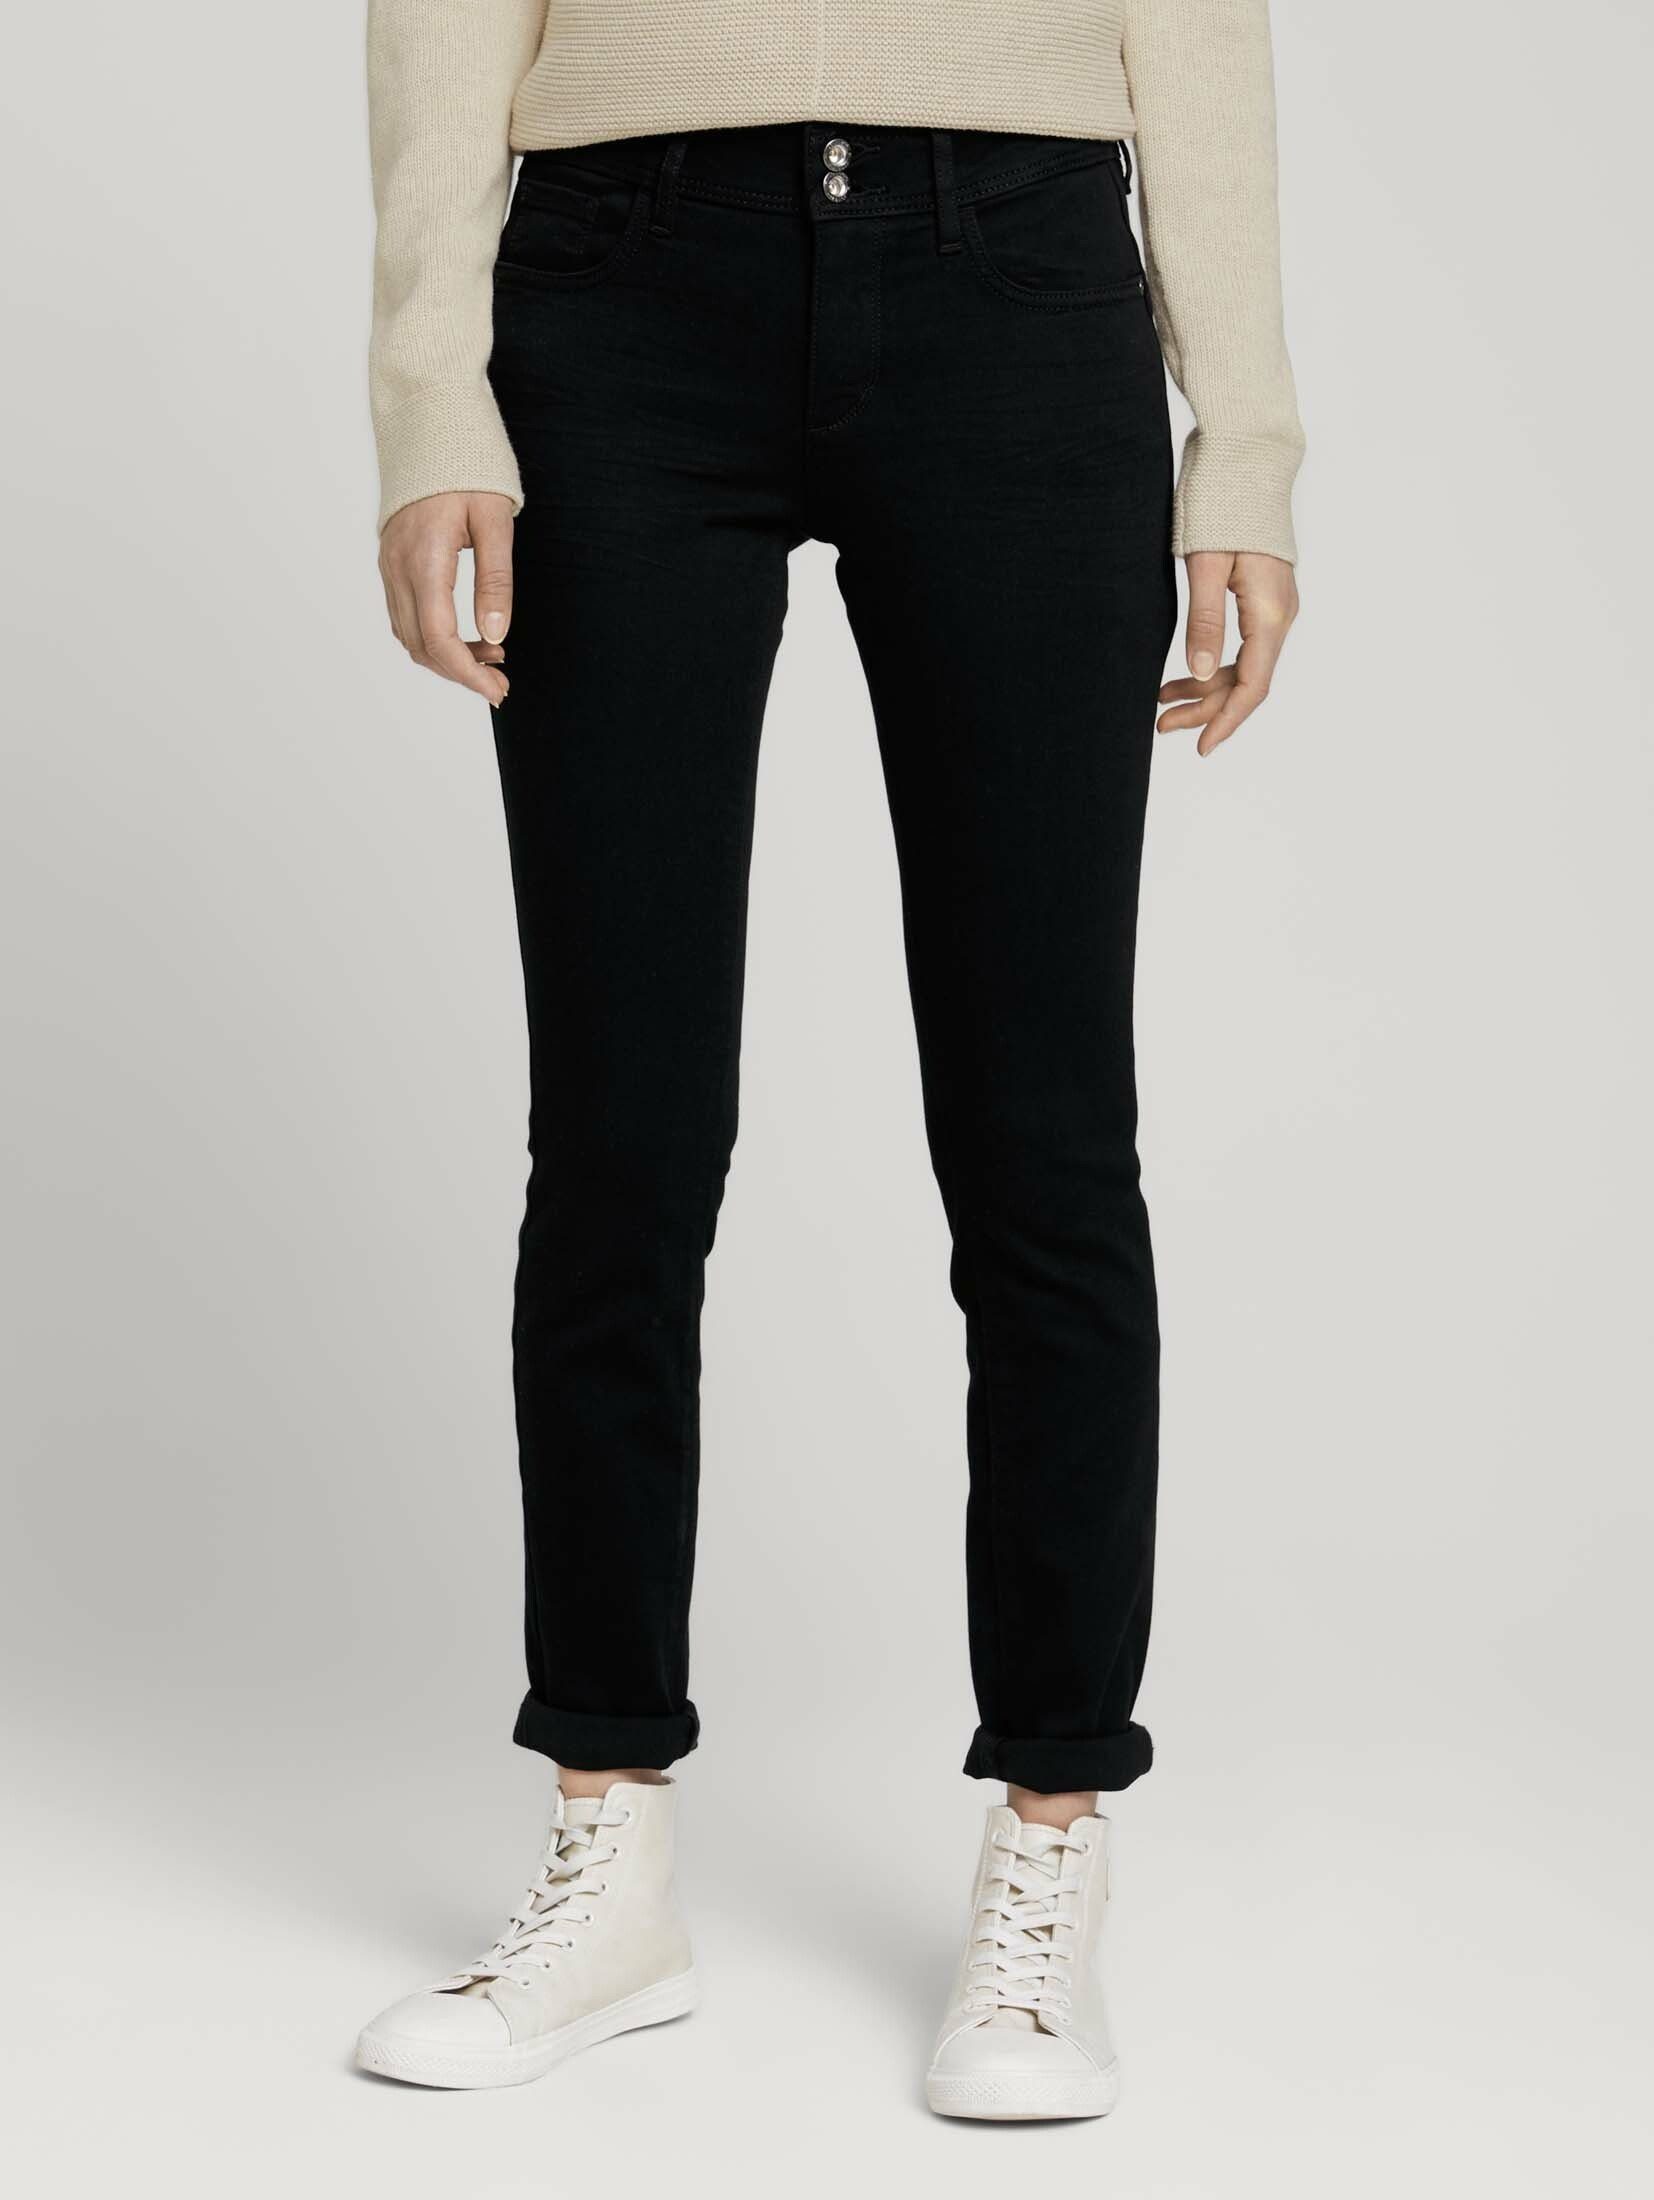 TOM TAILOR Skinny-fit-Jeans Alexa Skinny Jeans black black denim